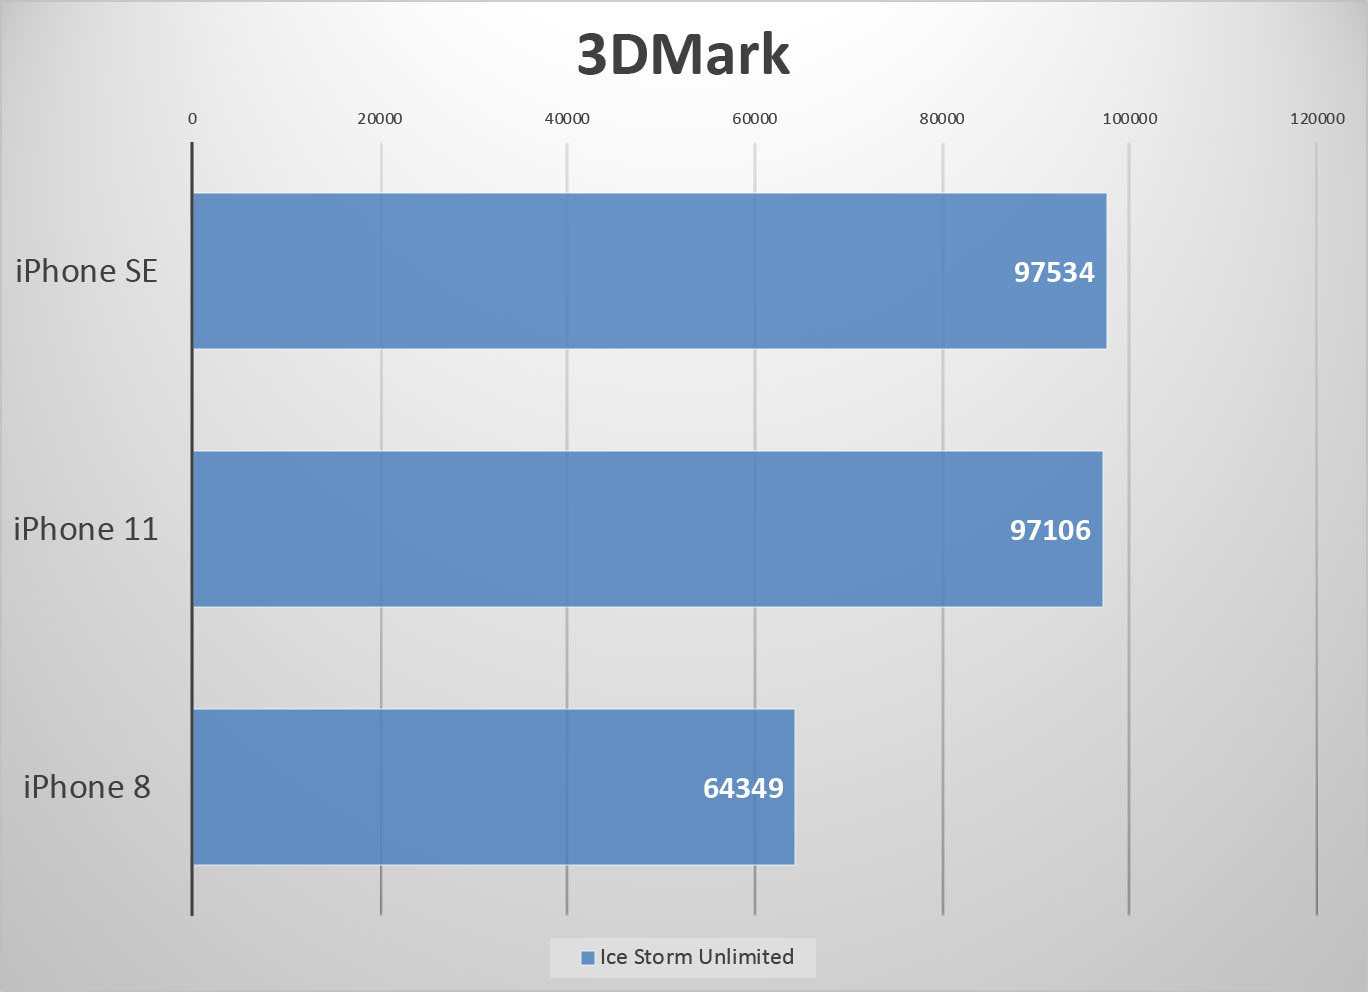 جدول مقایسه گوشی های آیفون براساس 3DMark